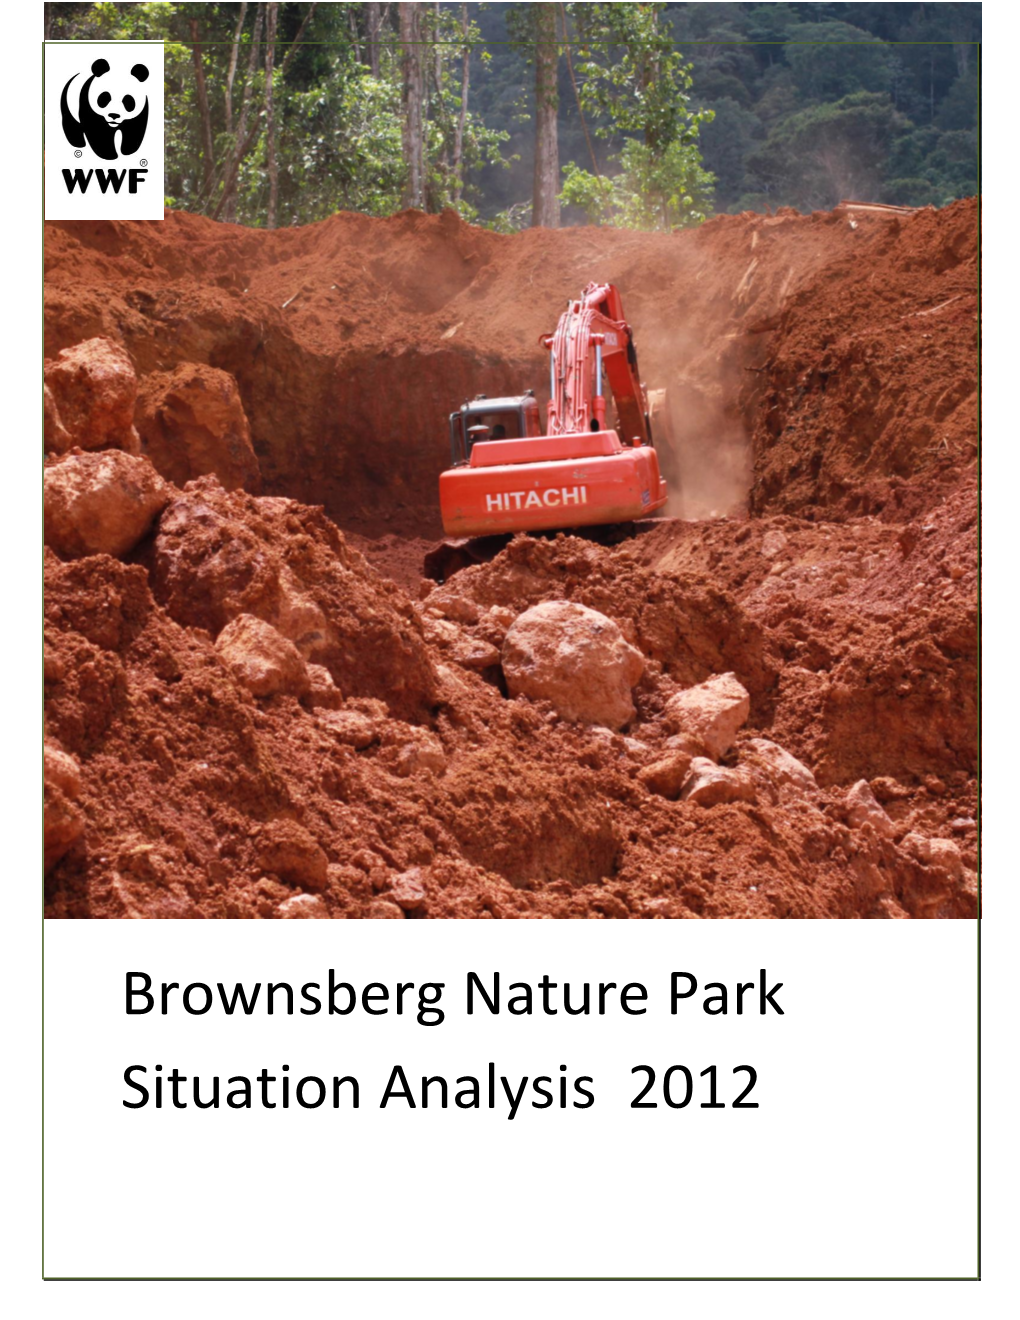 Brownsberg Nature Park Situation Analysis 2012